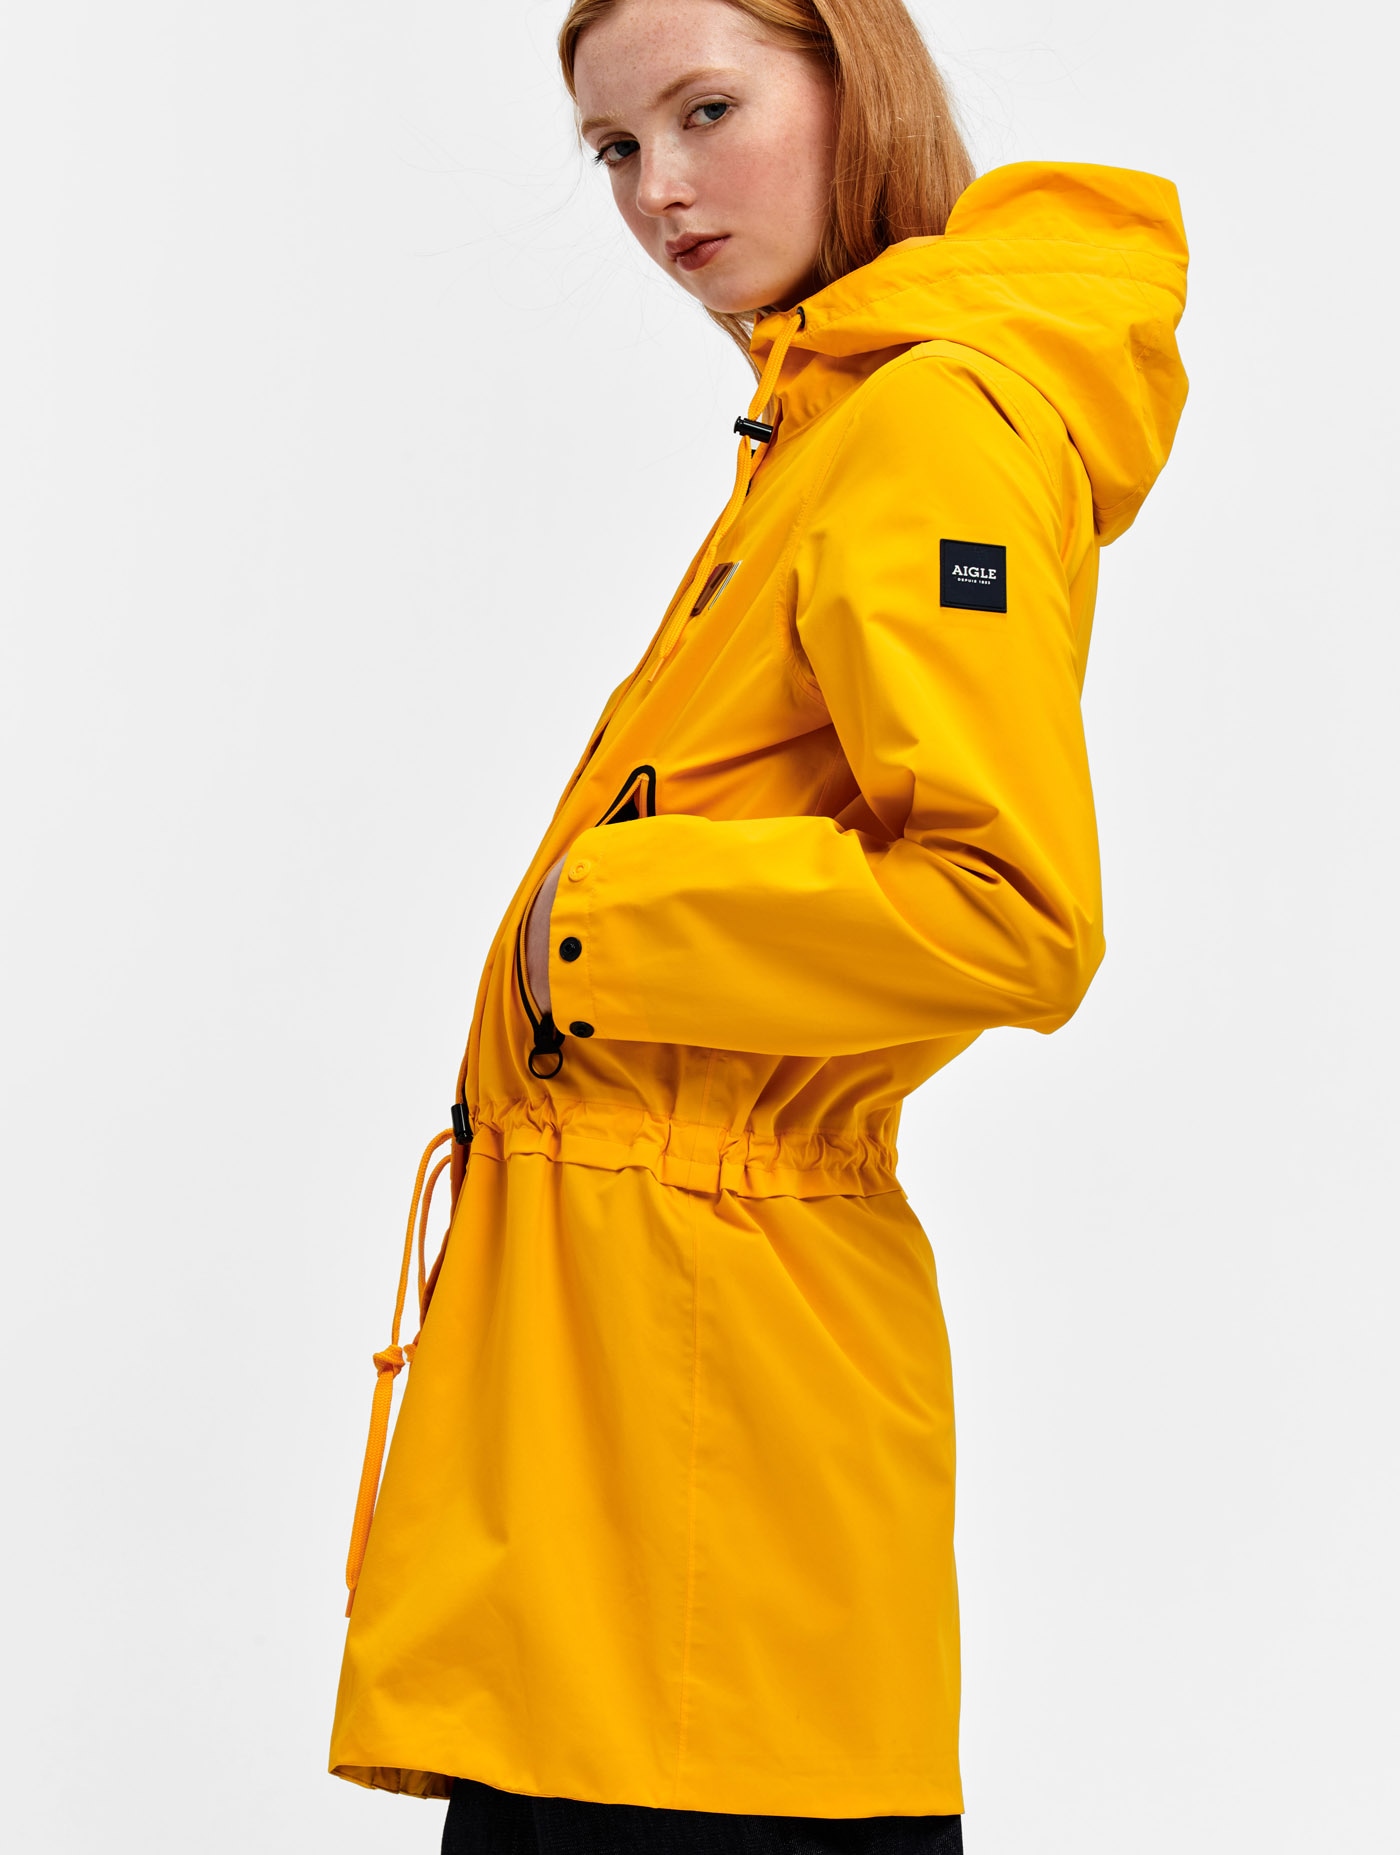 Women's Coats, Jackets ⋅ Parka, Trench Coat, Raincoat | Aigle